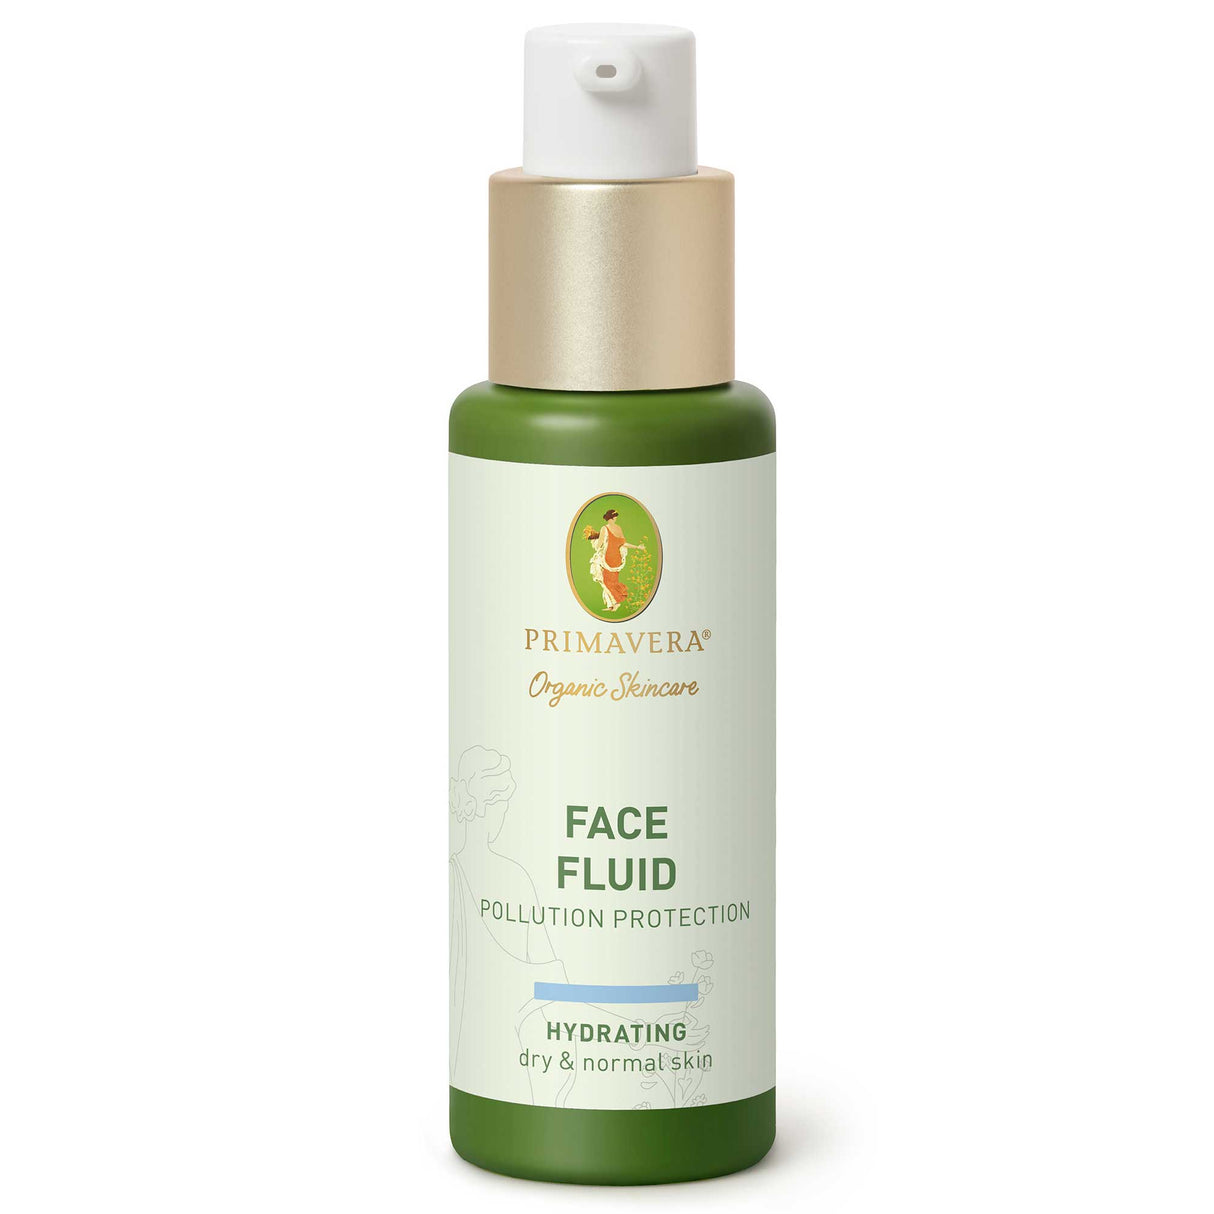 Face Fluid - Pollution Protection, 30 ml